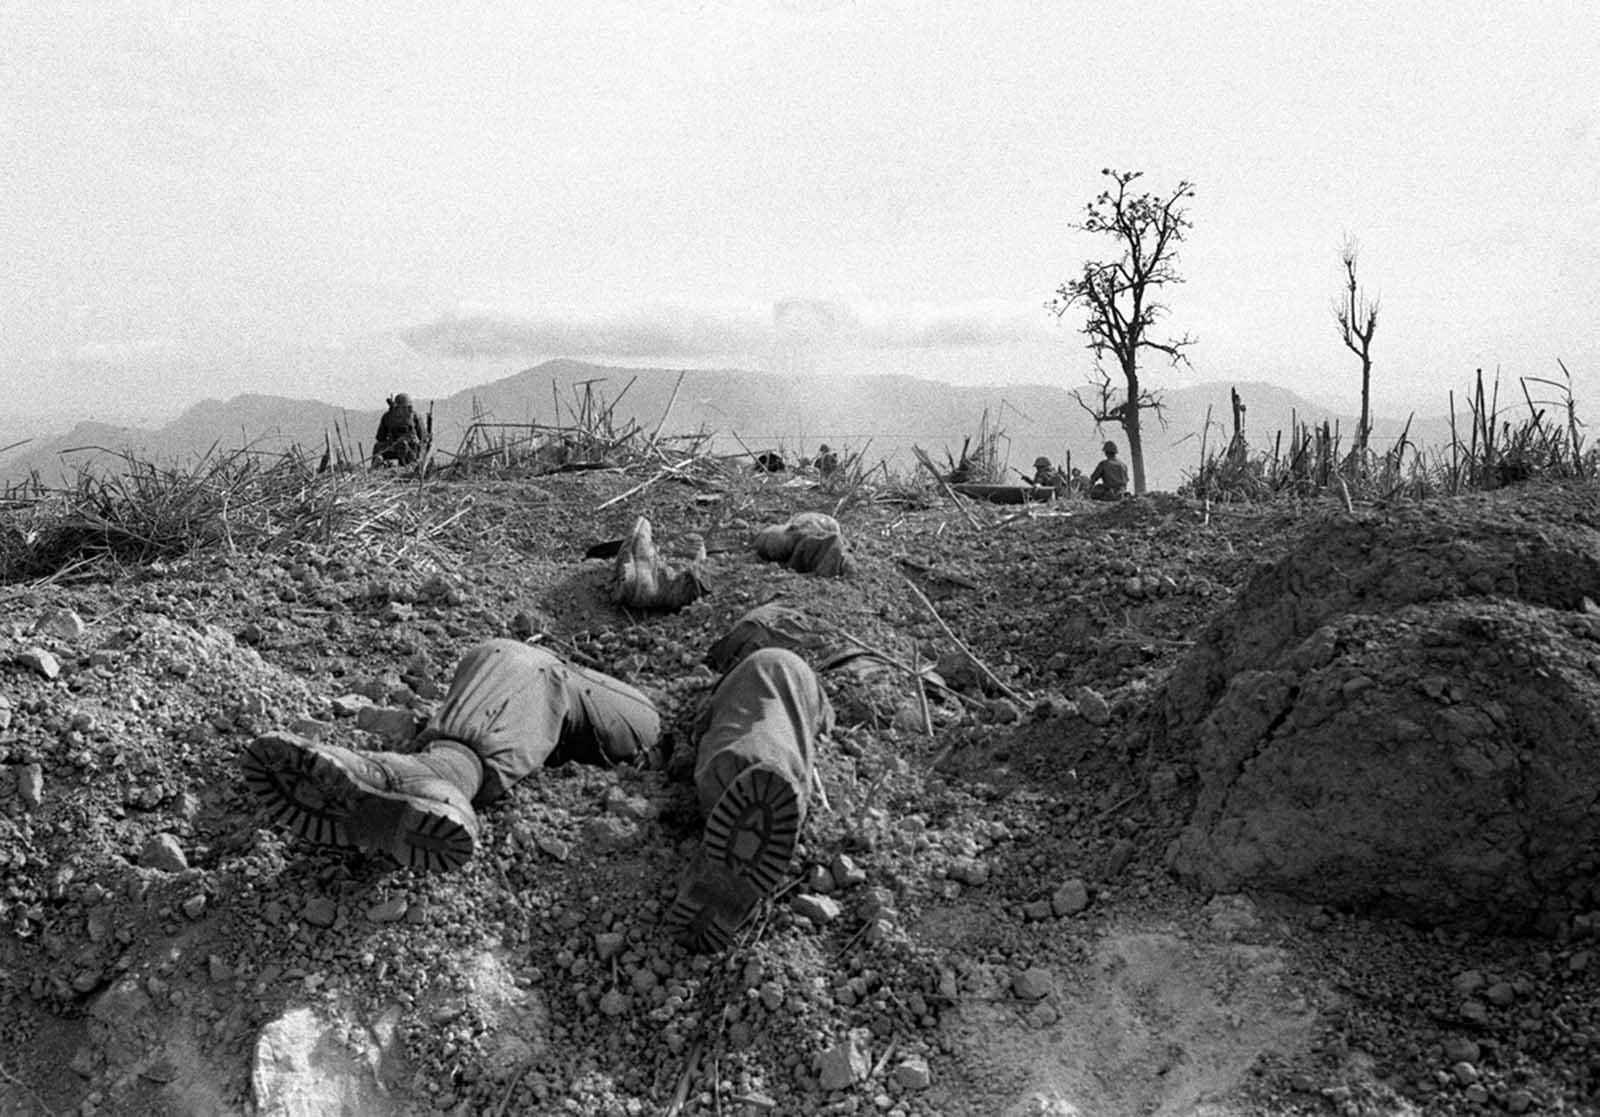 残酷的二战战争画面摄影与效果合成 [22P]